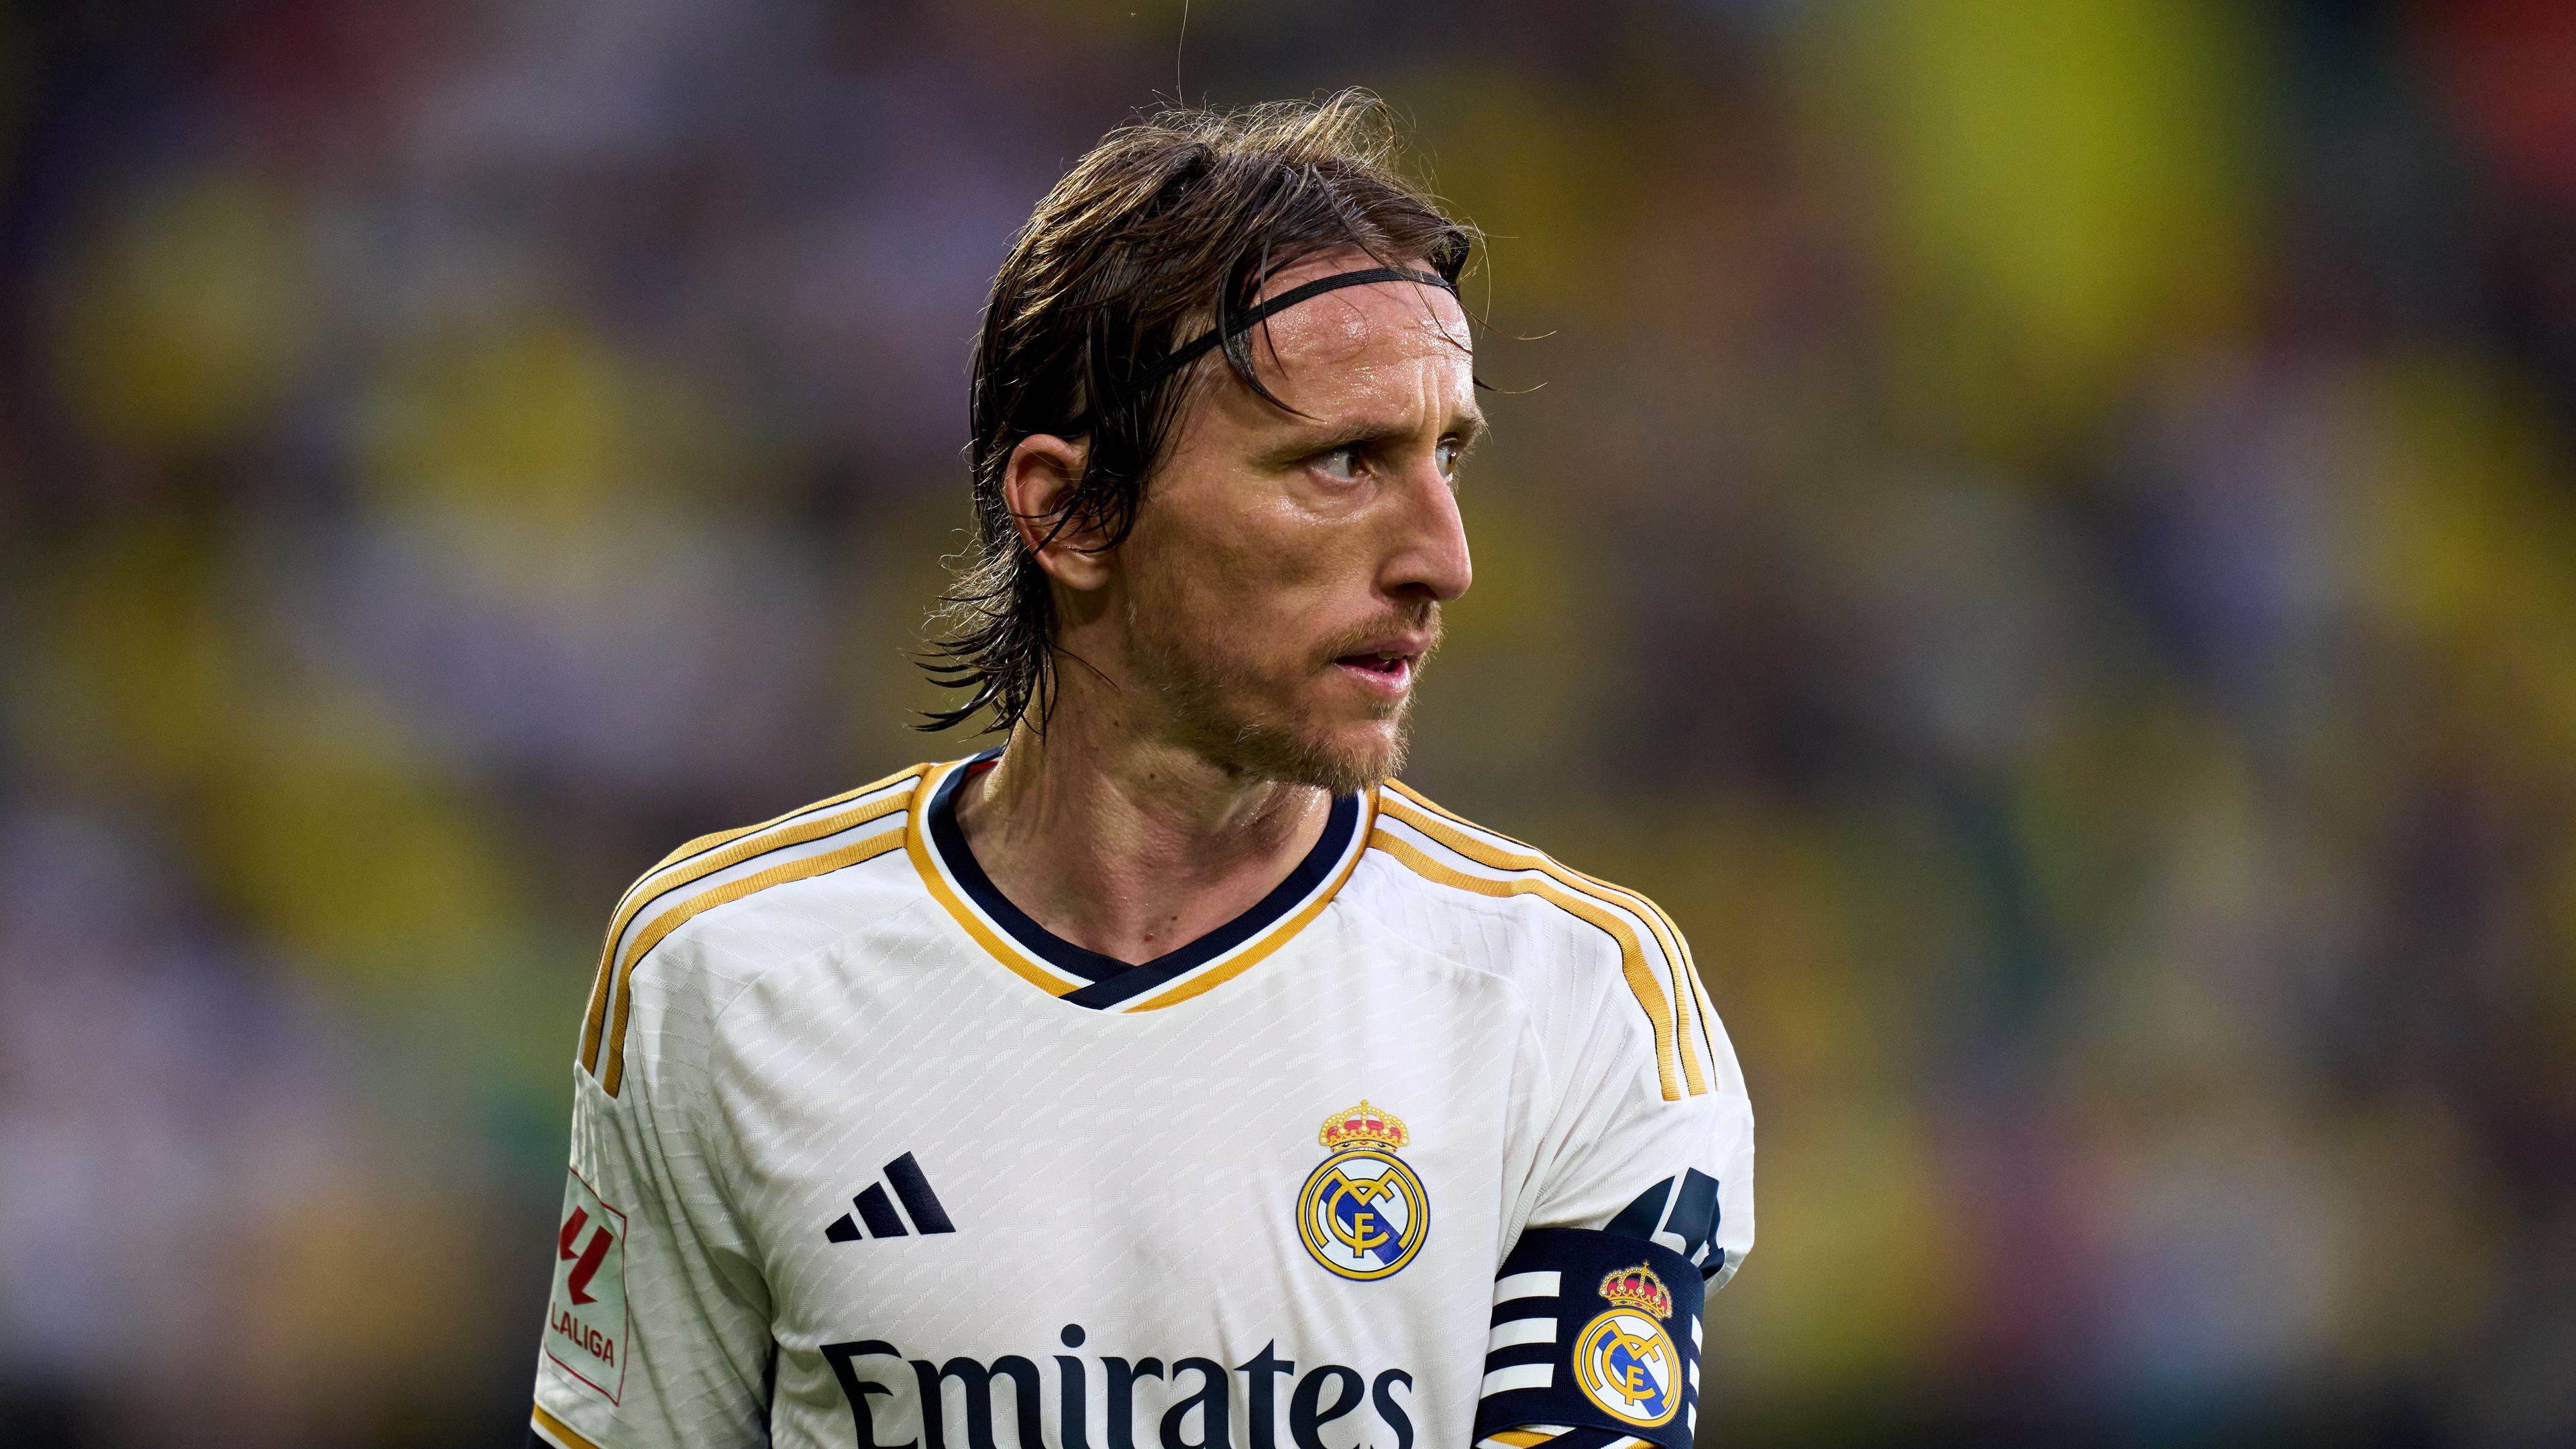 Úgy tűnik, Kroos után Modric jövője is eldőlt a Real Madridnál